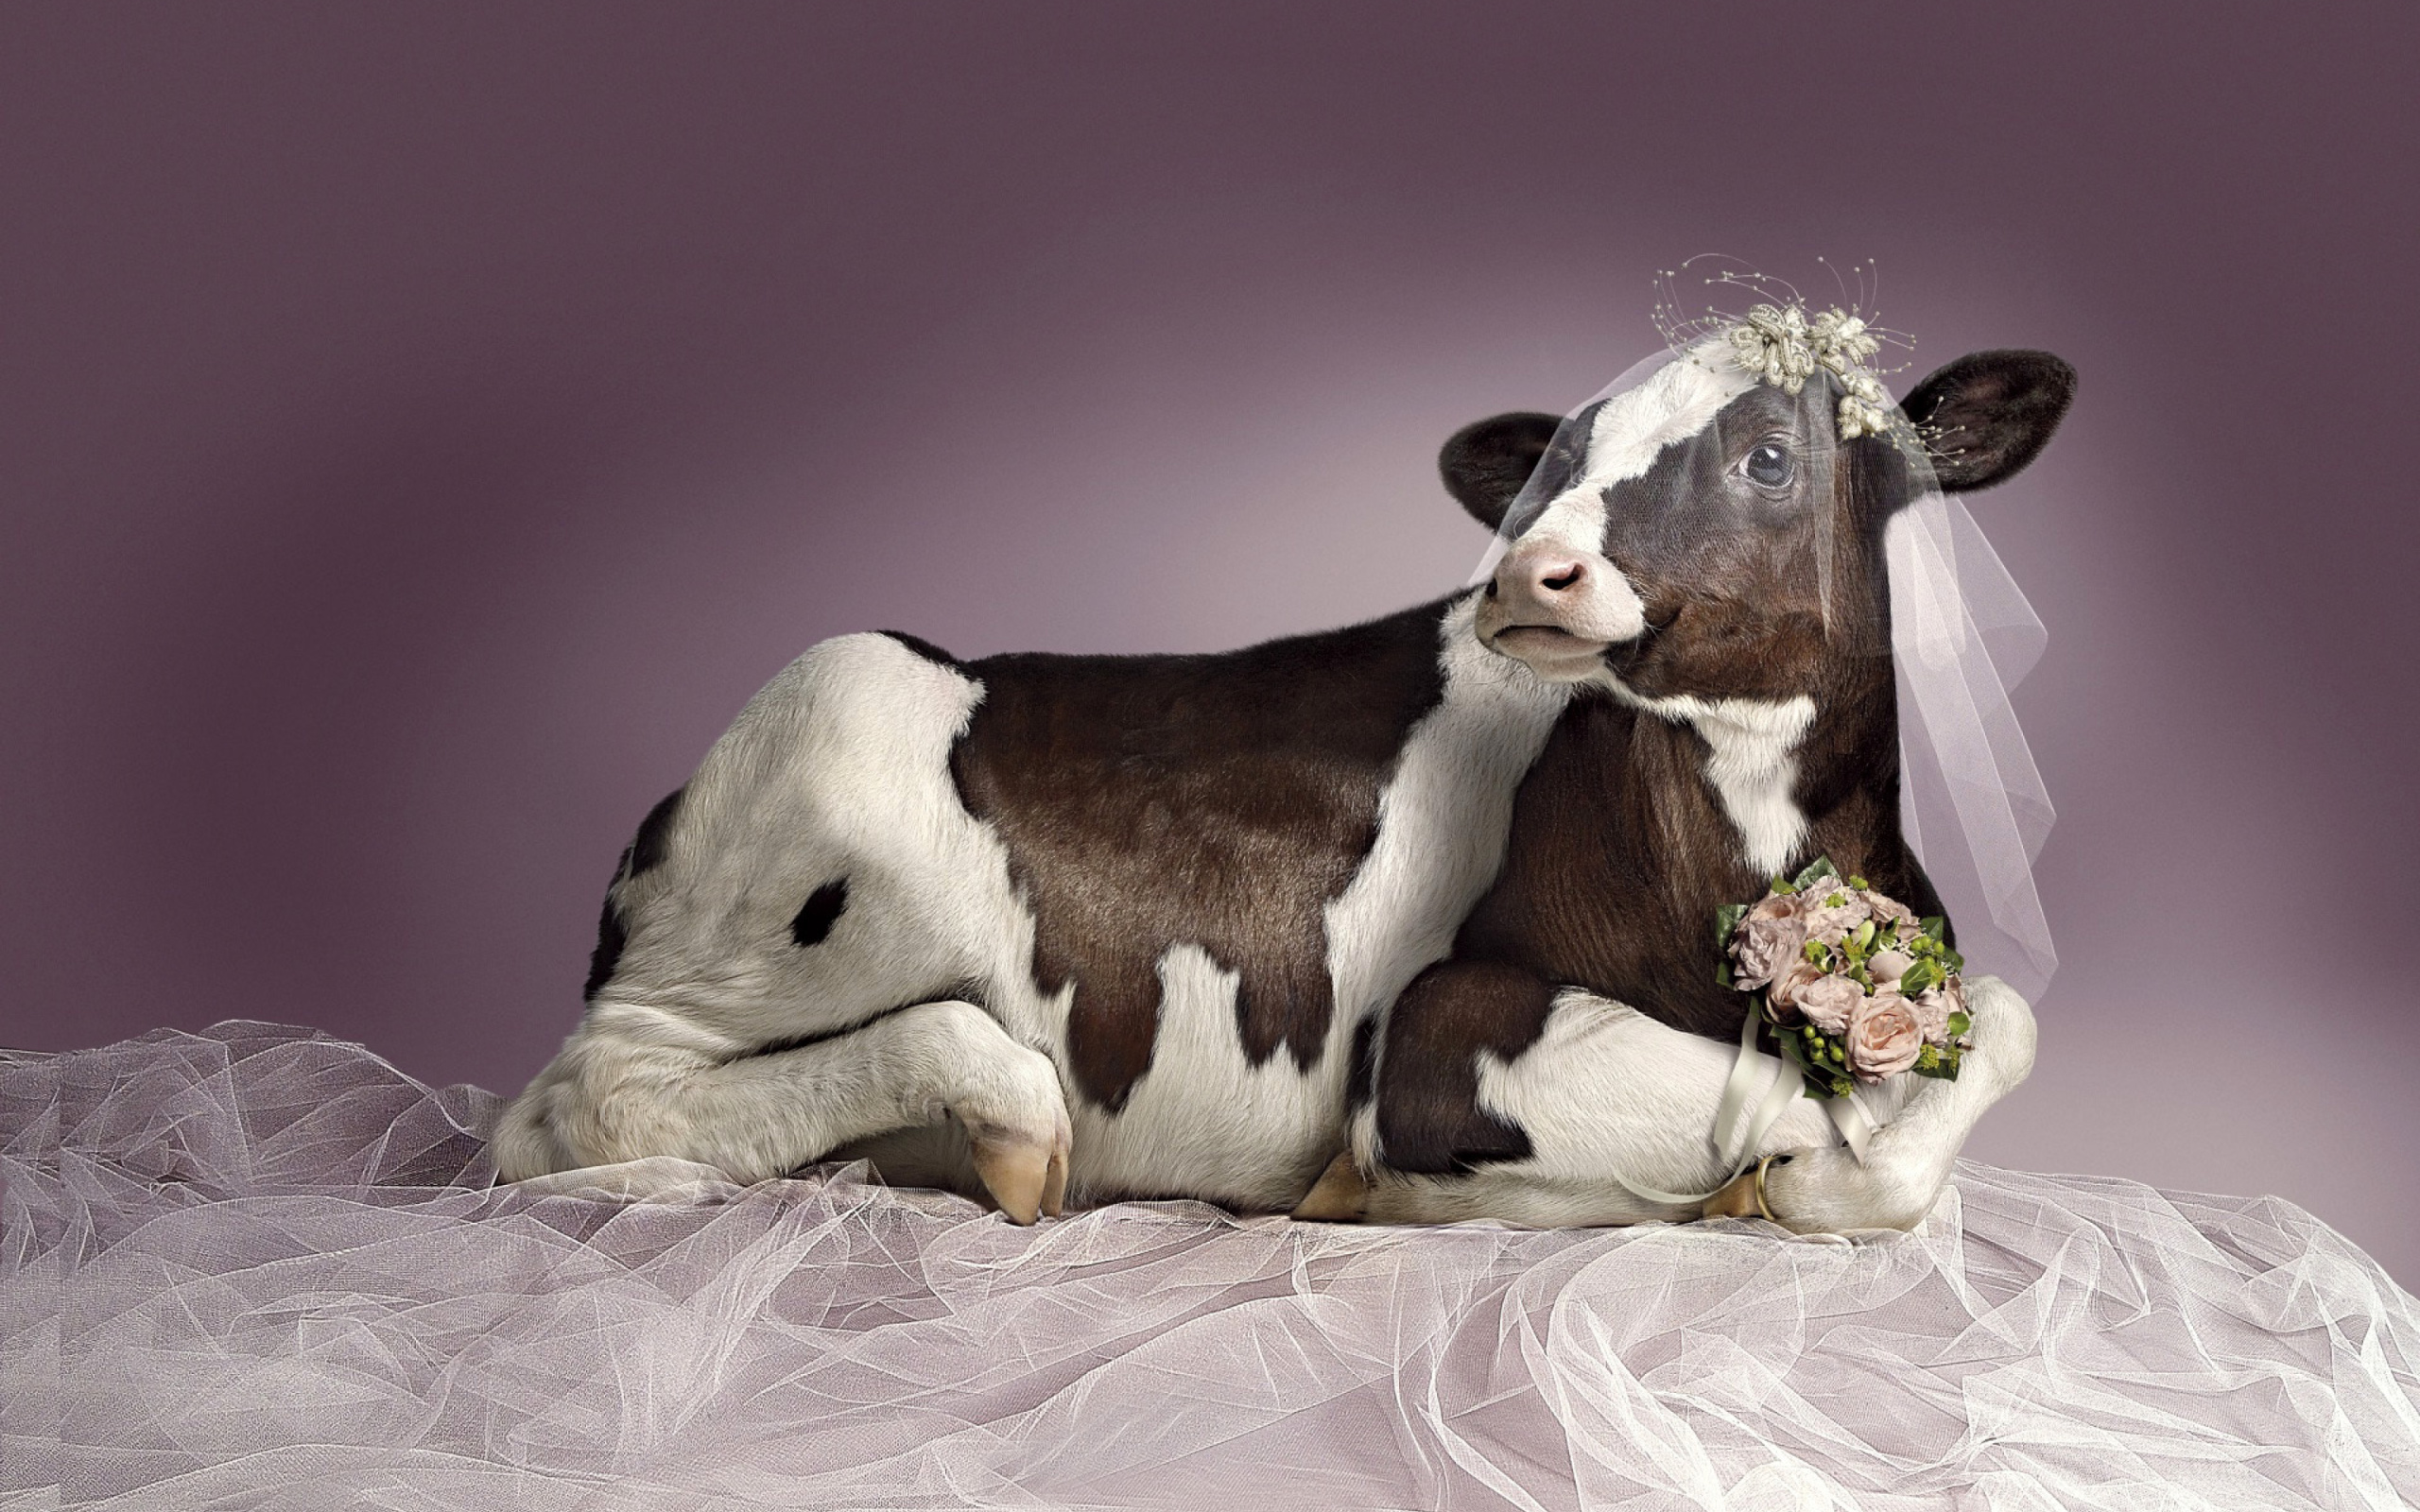 Смешные коровы фото